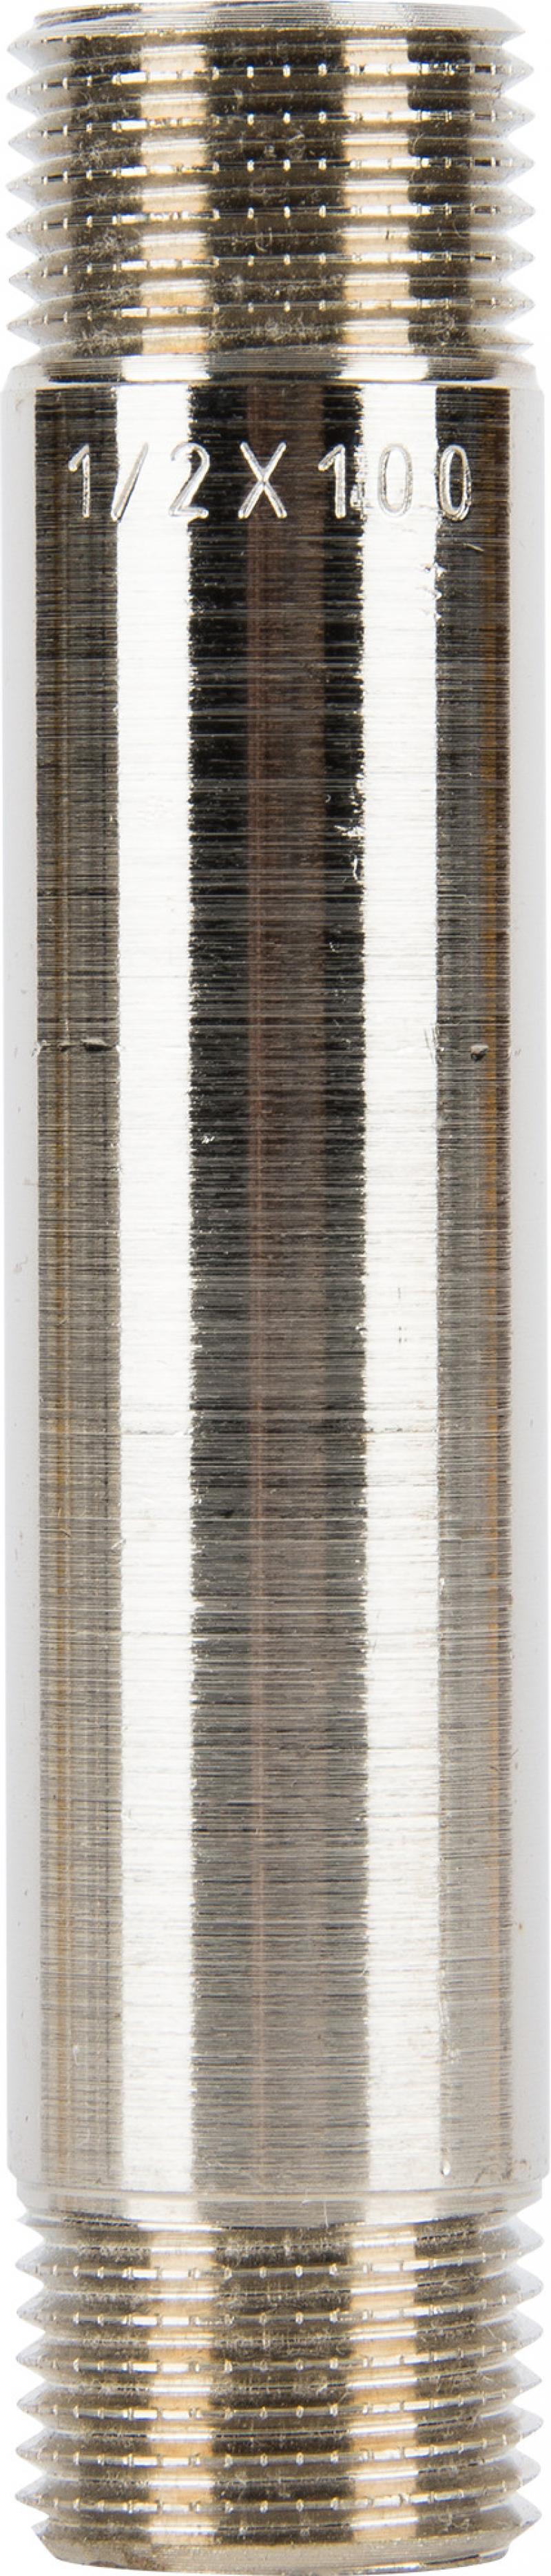 Бочонок Equation 1/2"x100 мм никелированная латунь